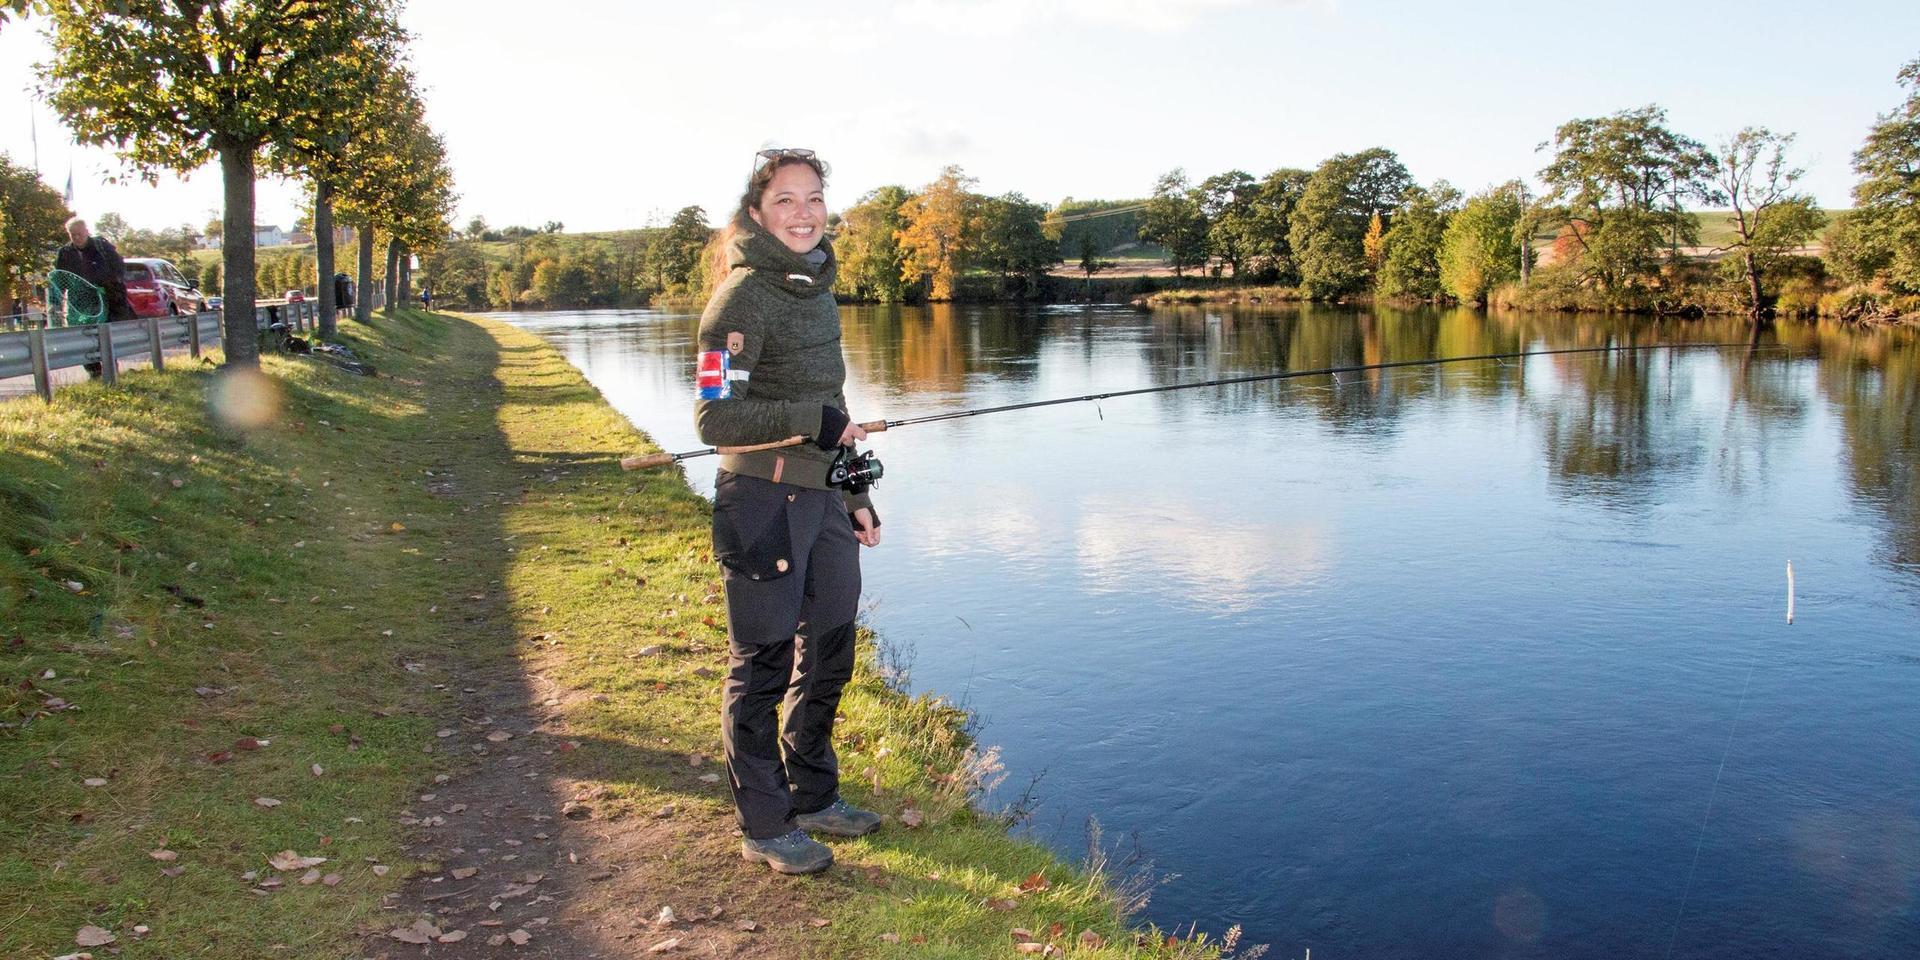 Fiske i Lagan 2020. Cecilie Hee-Frederiksen är en av få unga kvinnor som fiskar.